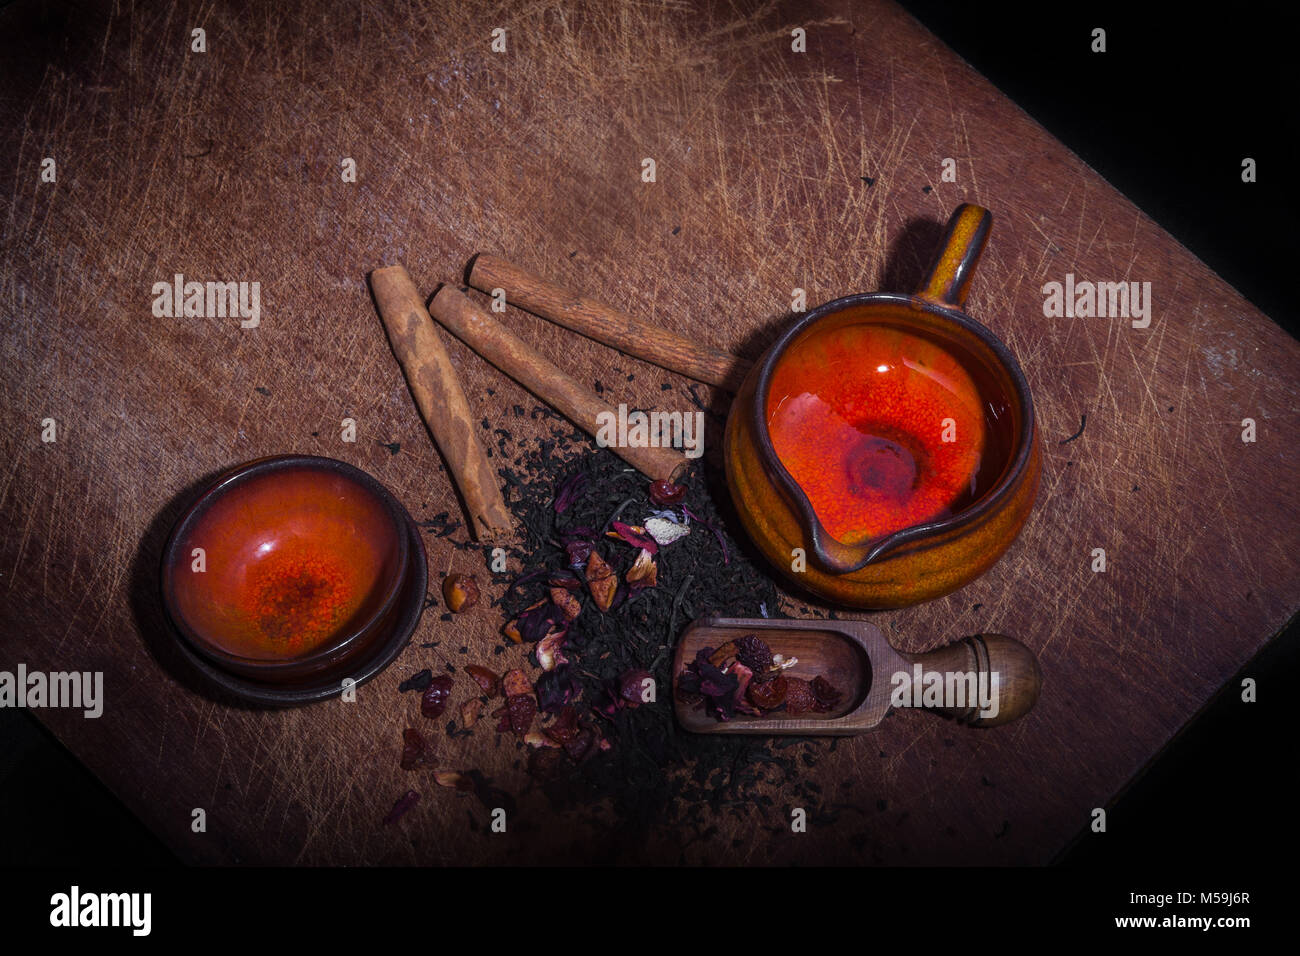 Alte Keramik Tassen und Kaffee Glas auf Holzbrett mit Tee Blätter und Aromen - Schuß von oben Stockfoto